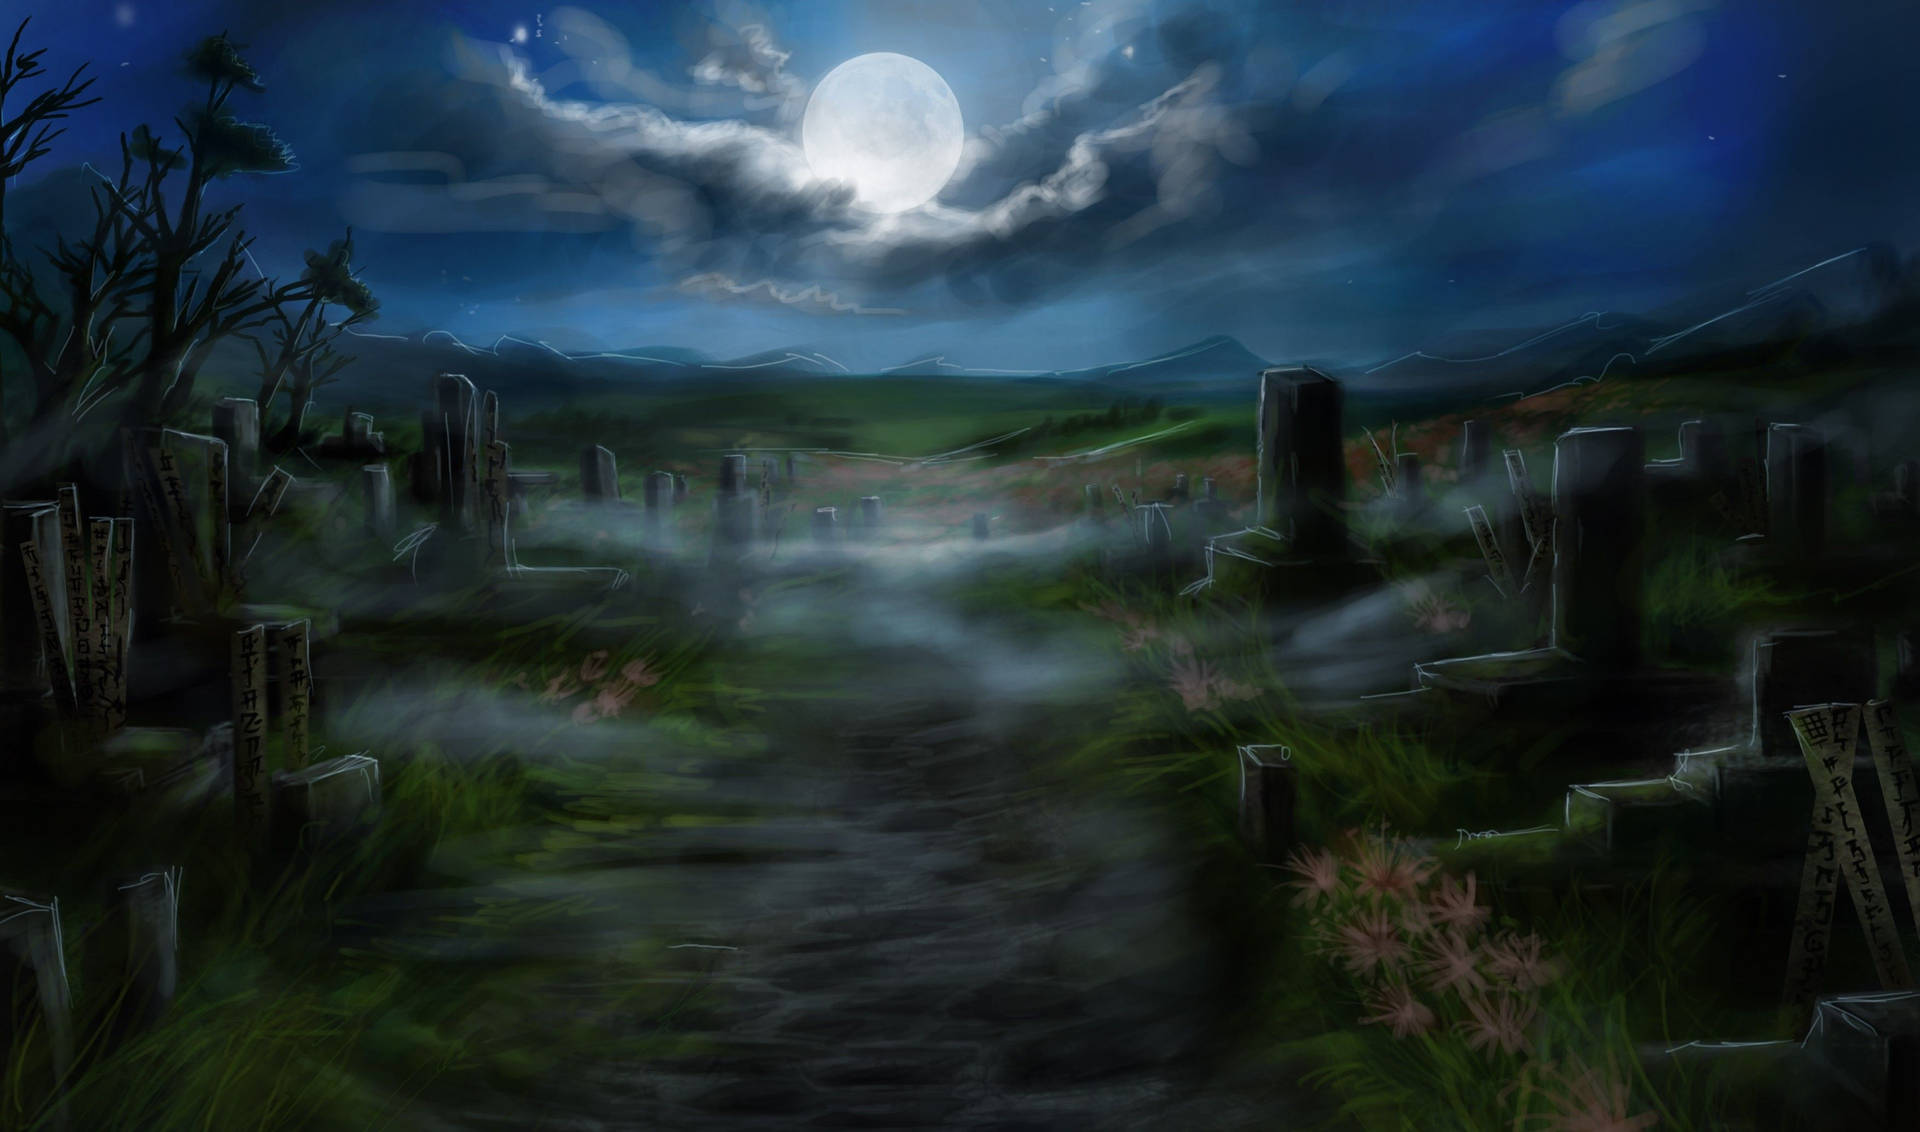 Dark Halloween Graveyard Background